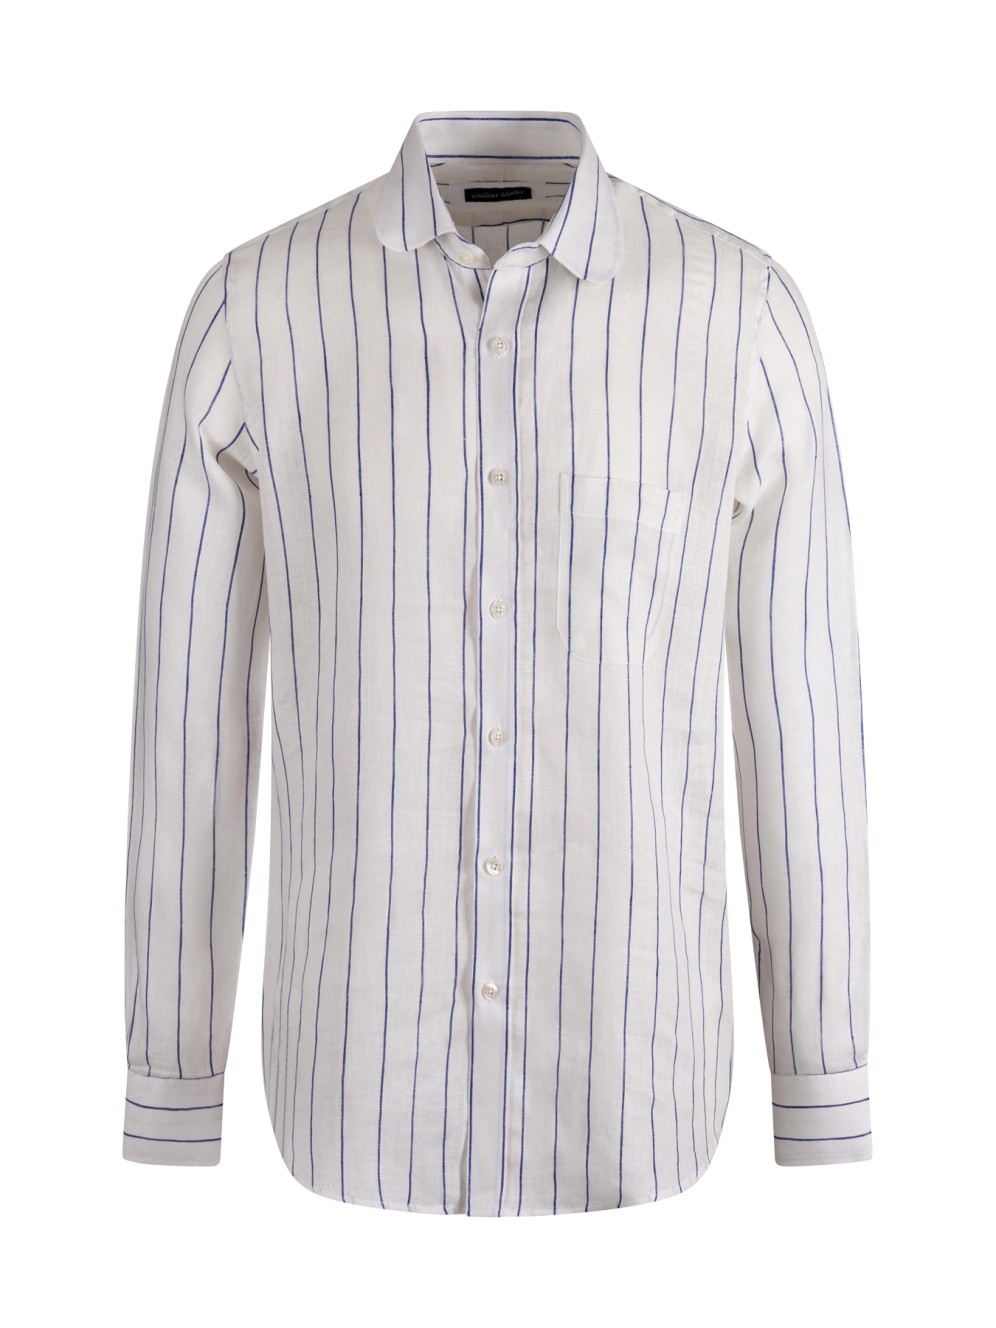 Clyde Shirt | Blue Stripe Linen